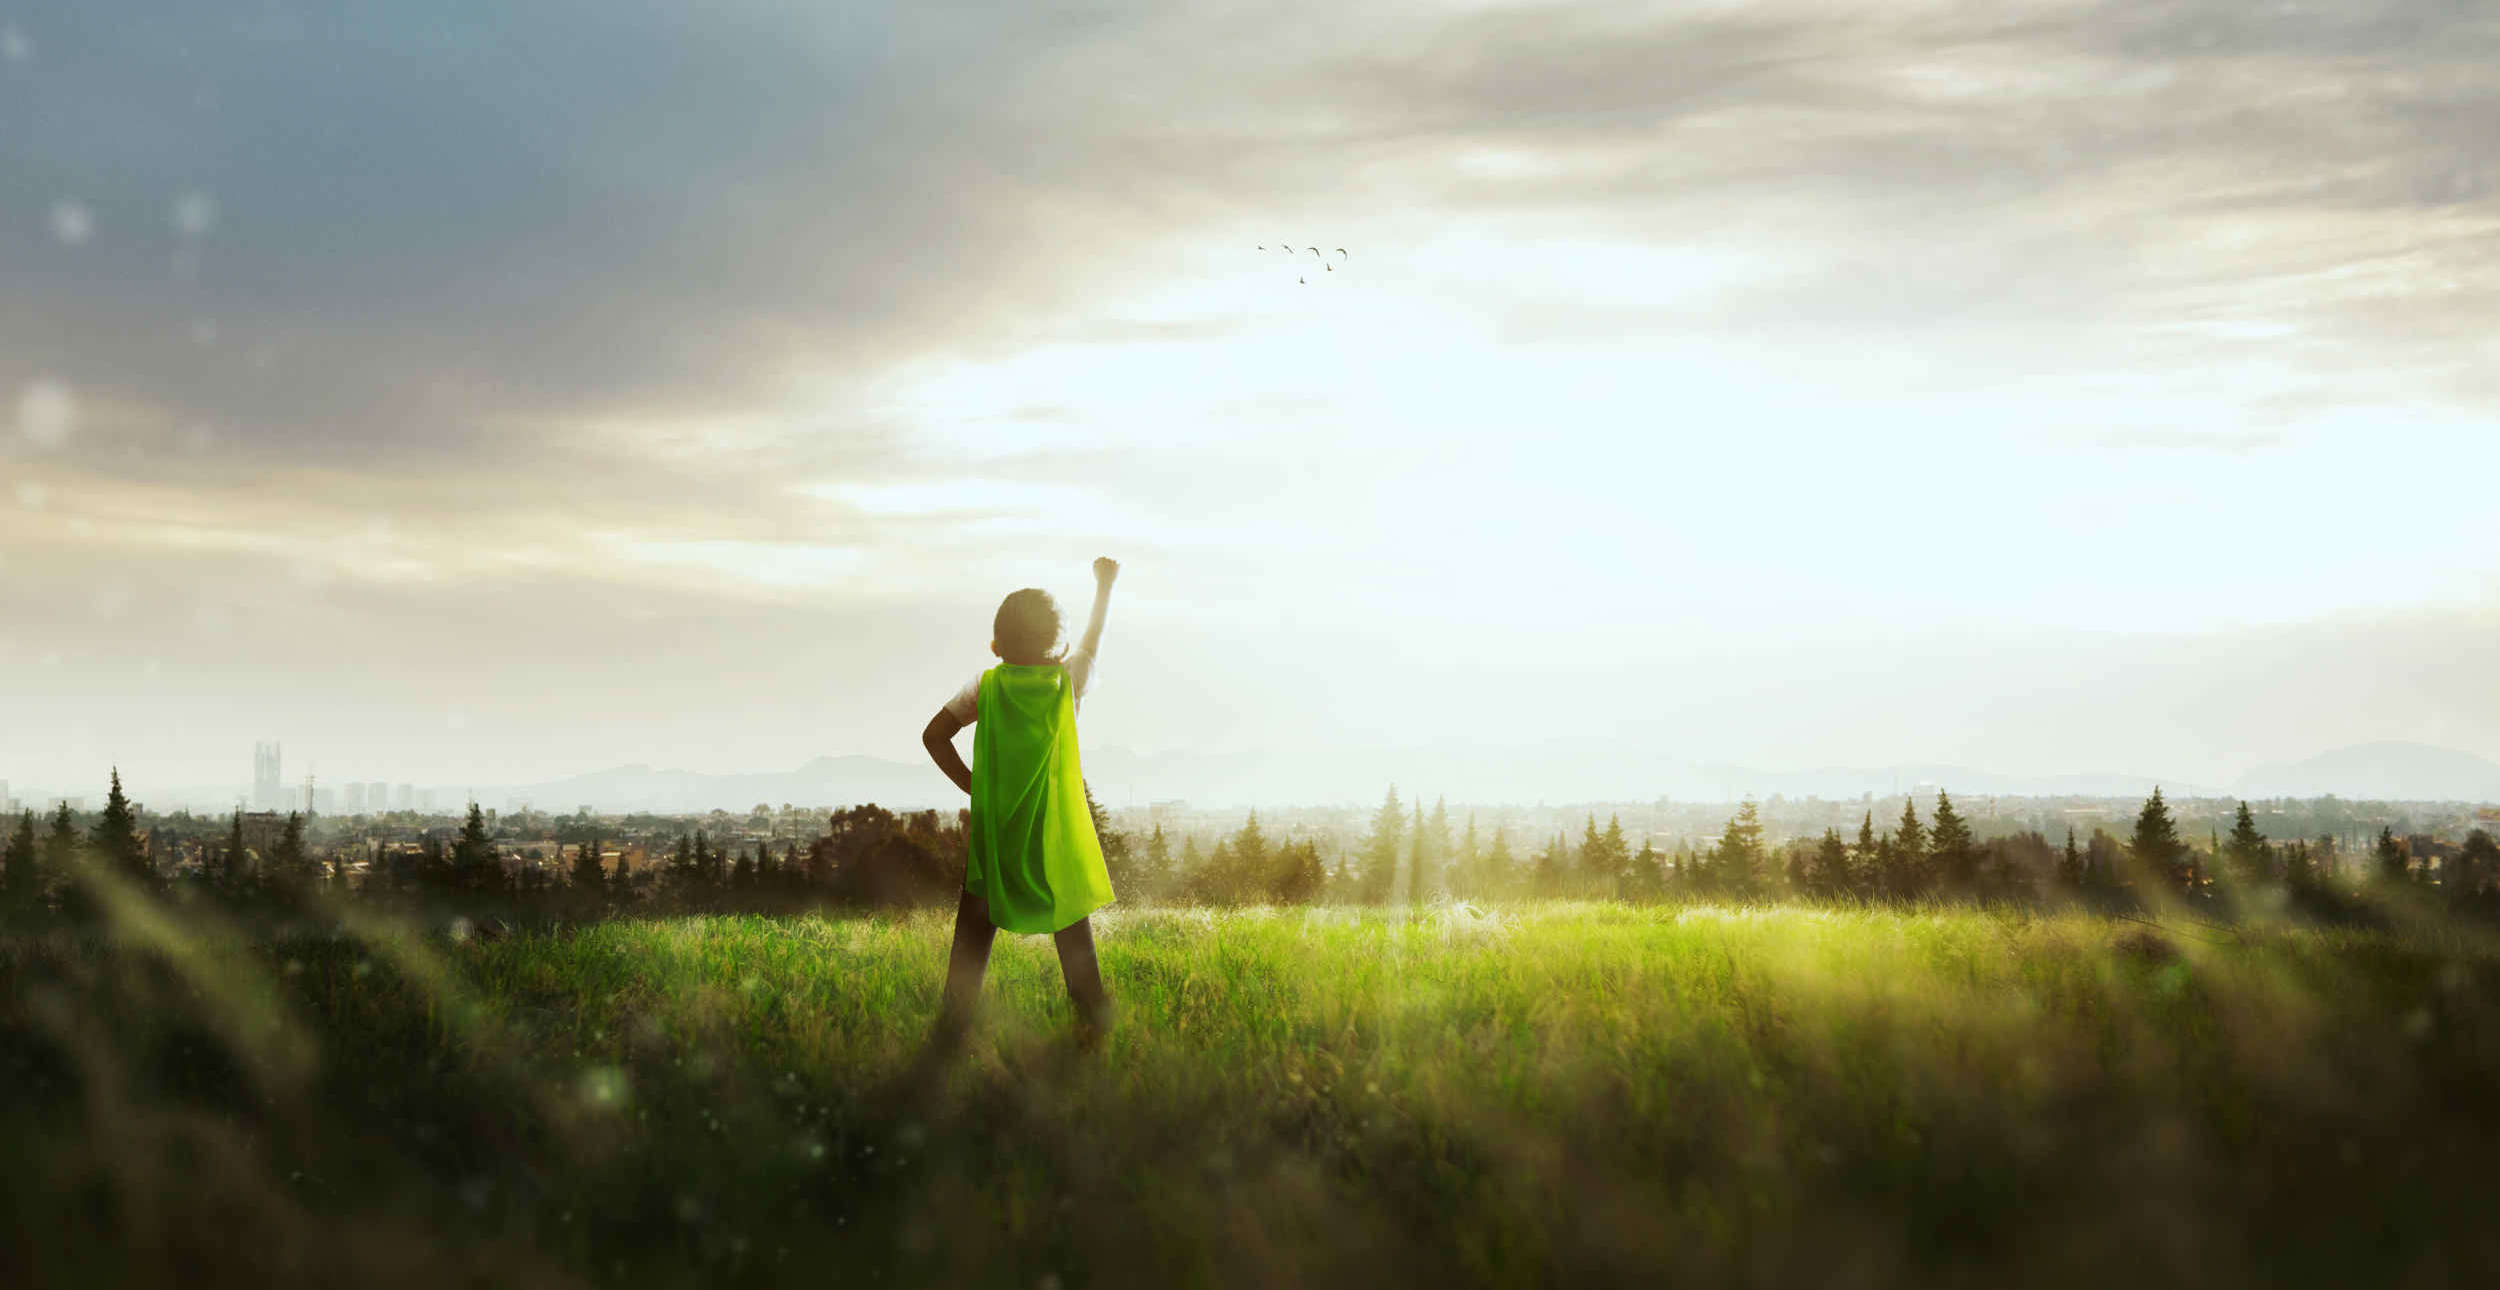 Little boy wearing a green superhero cape punching the sky in a field